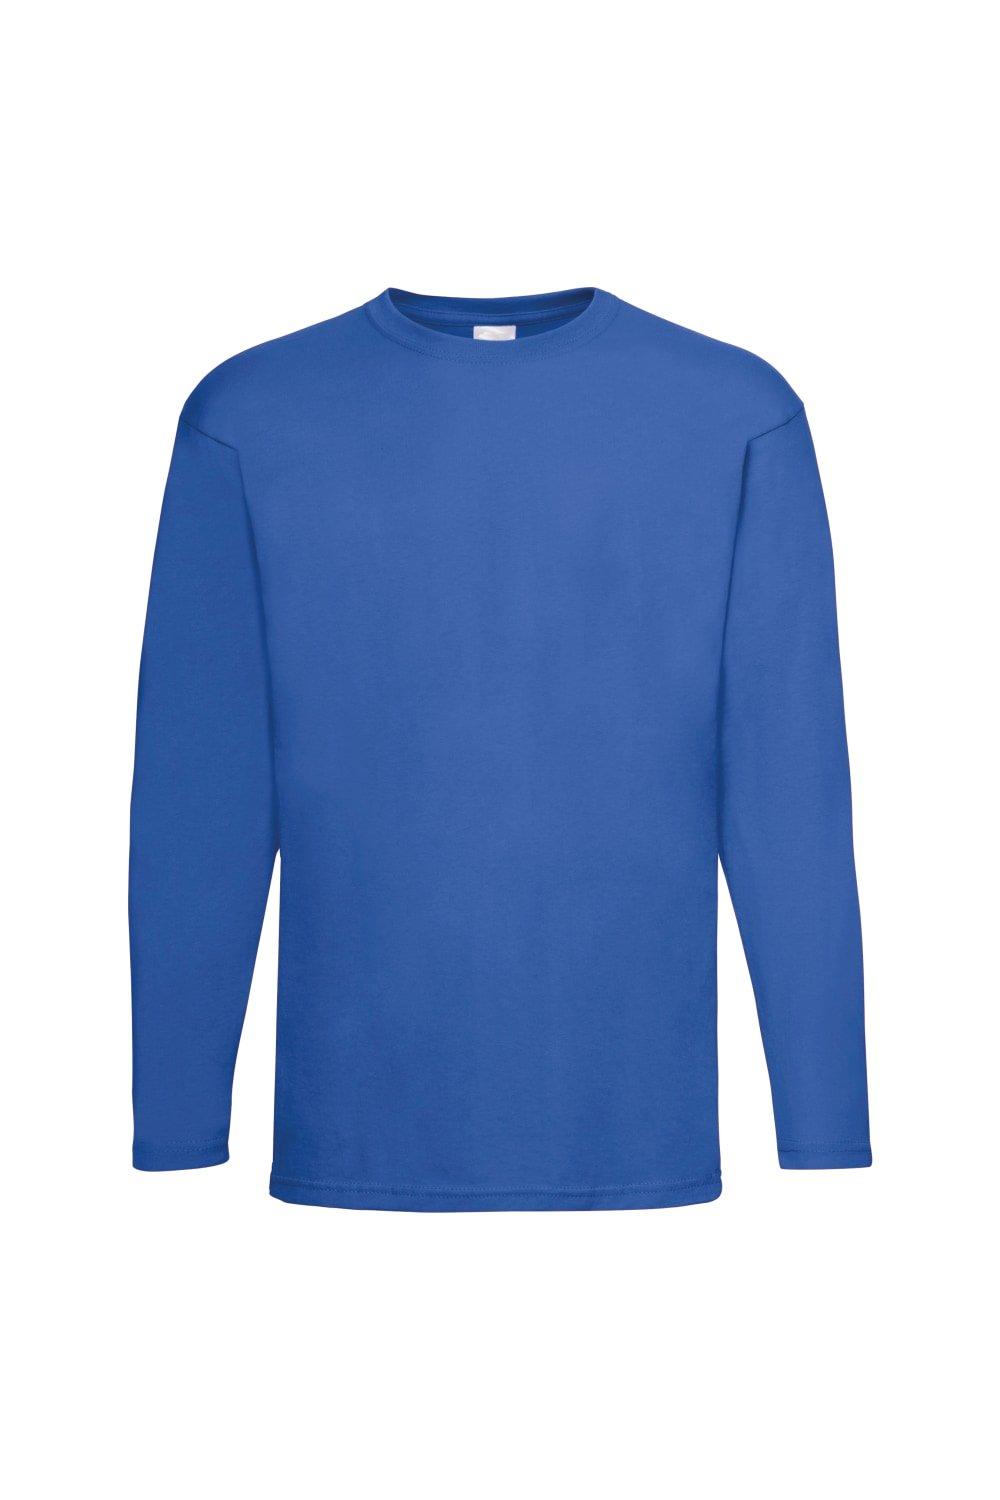 Повседневная футболка Value с длинным рукавом Universal Textiles, синий повседневная футболка с коротким рукавом universal textiles синий